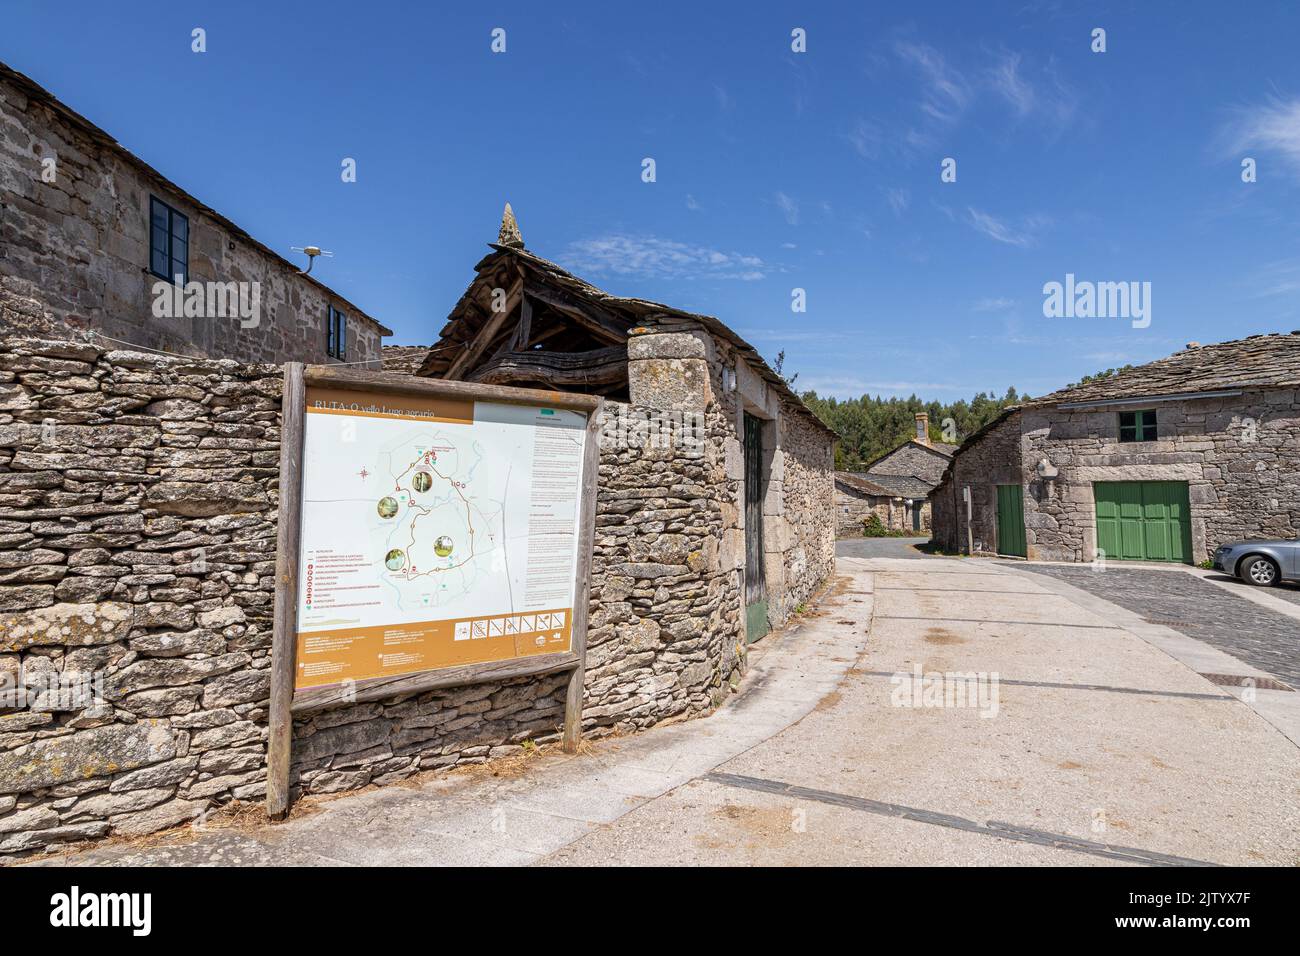 Boveda de Mera, España. Señales informativas sobre el templo romano de Santa Eulalia o Santalla Foto de stock